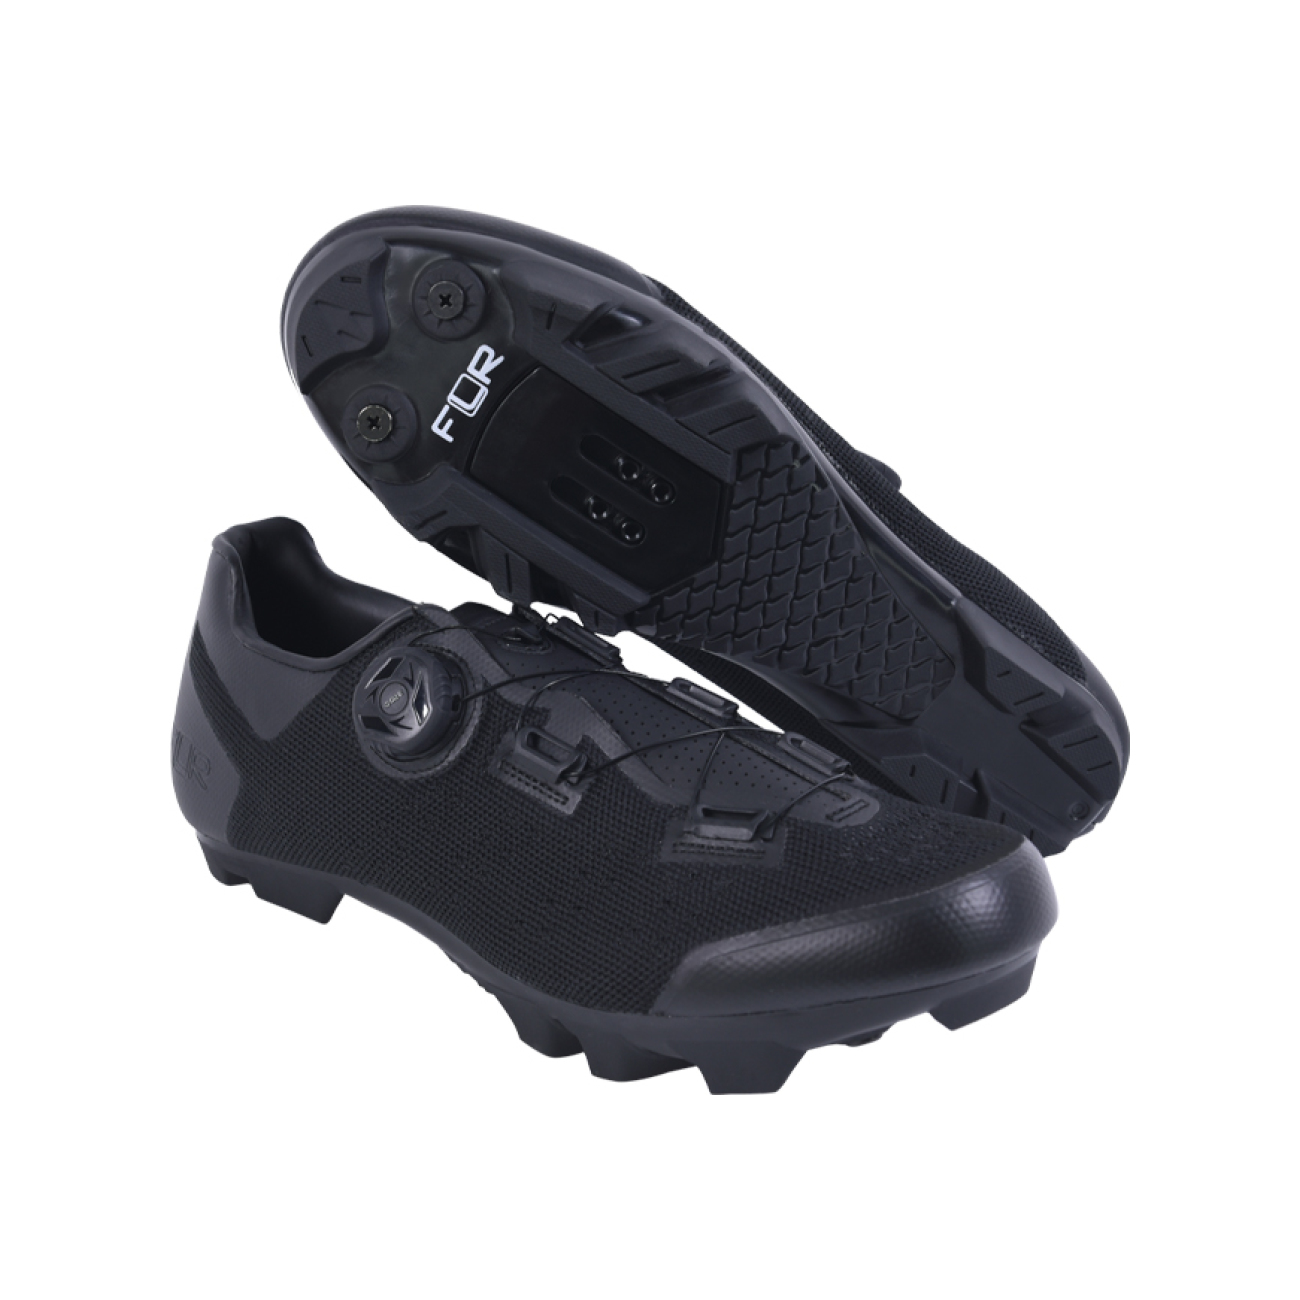 FLR Kerékpáros Cipő - F70 MTB - Fekete